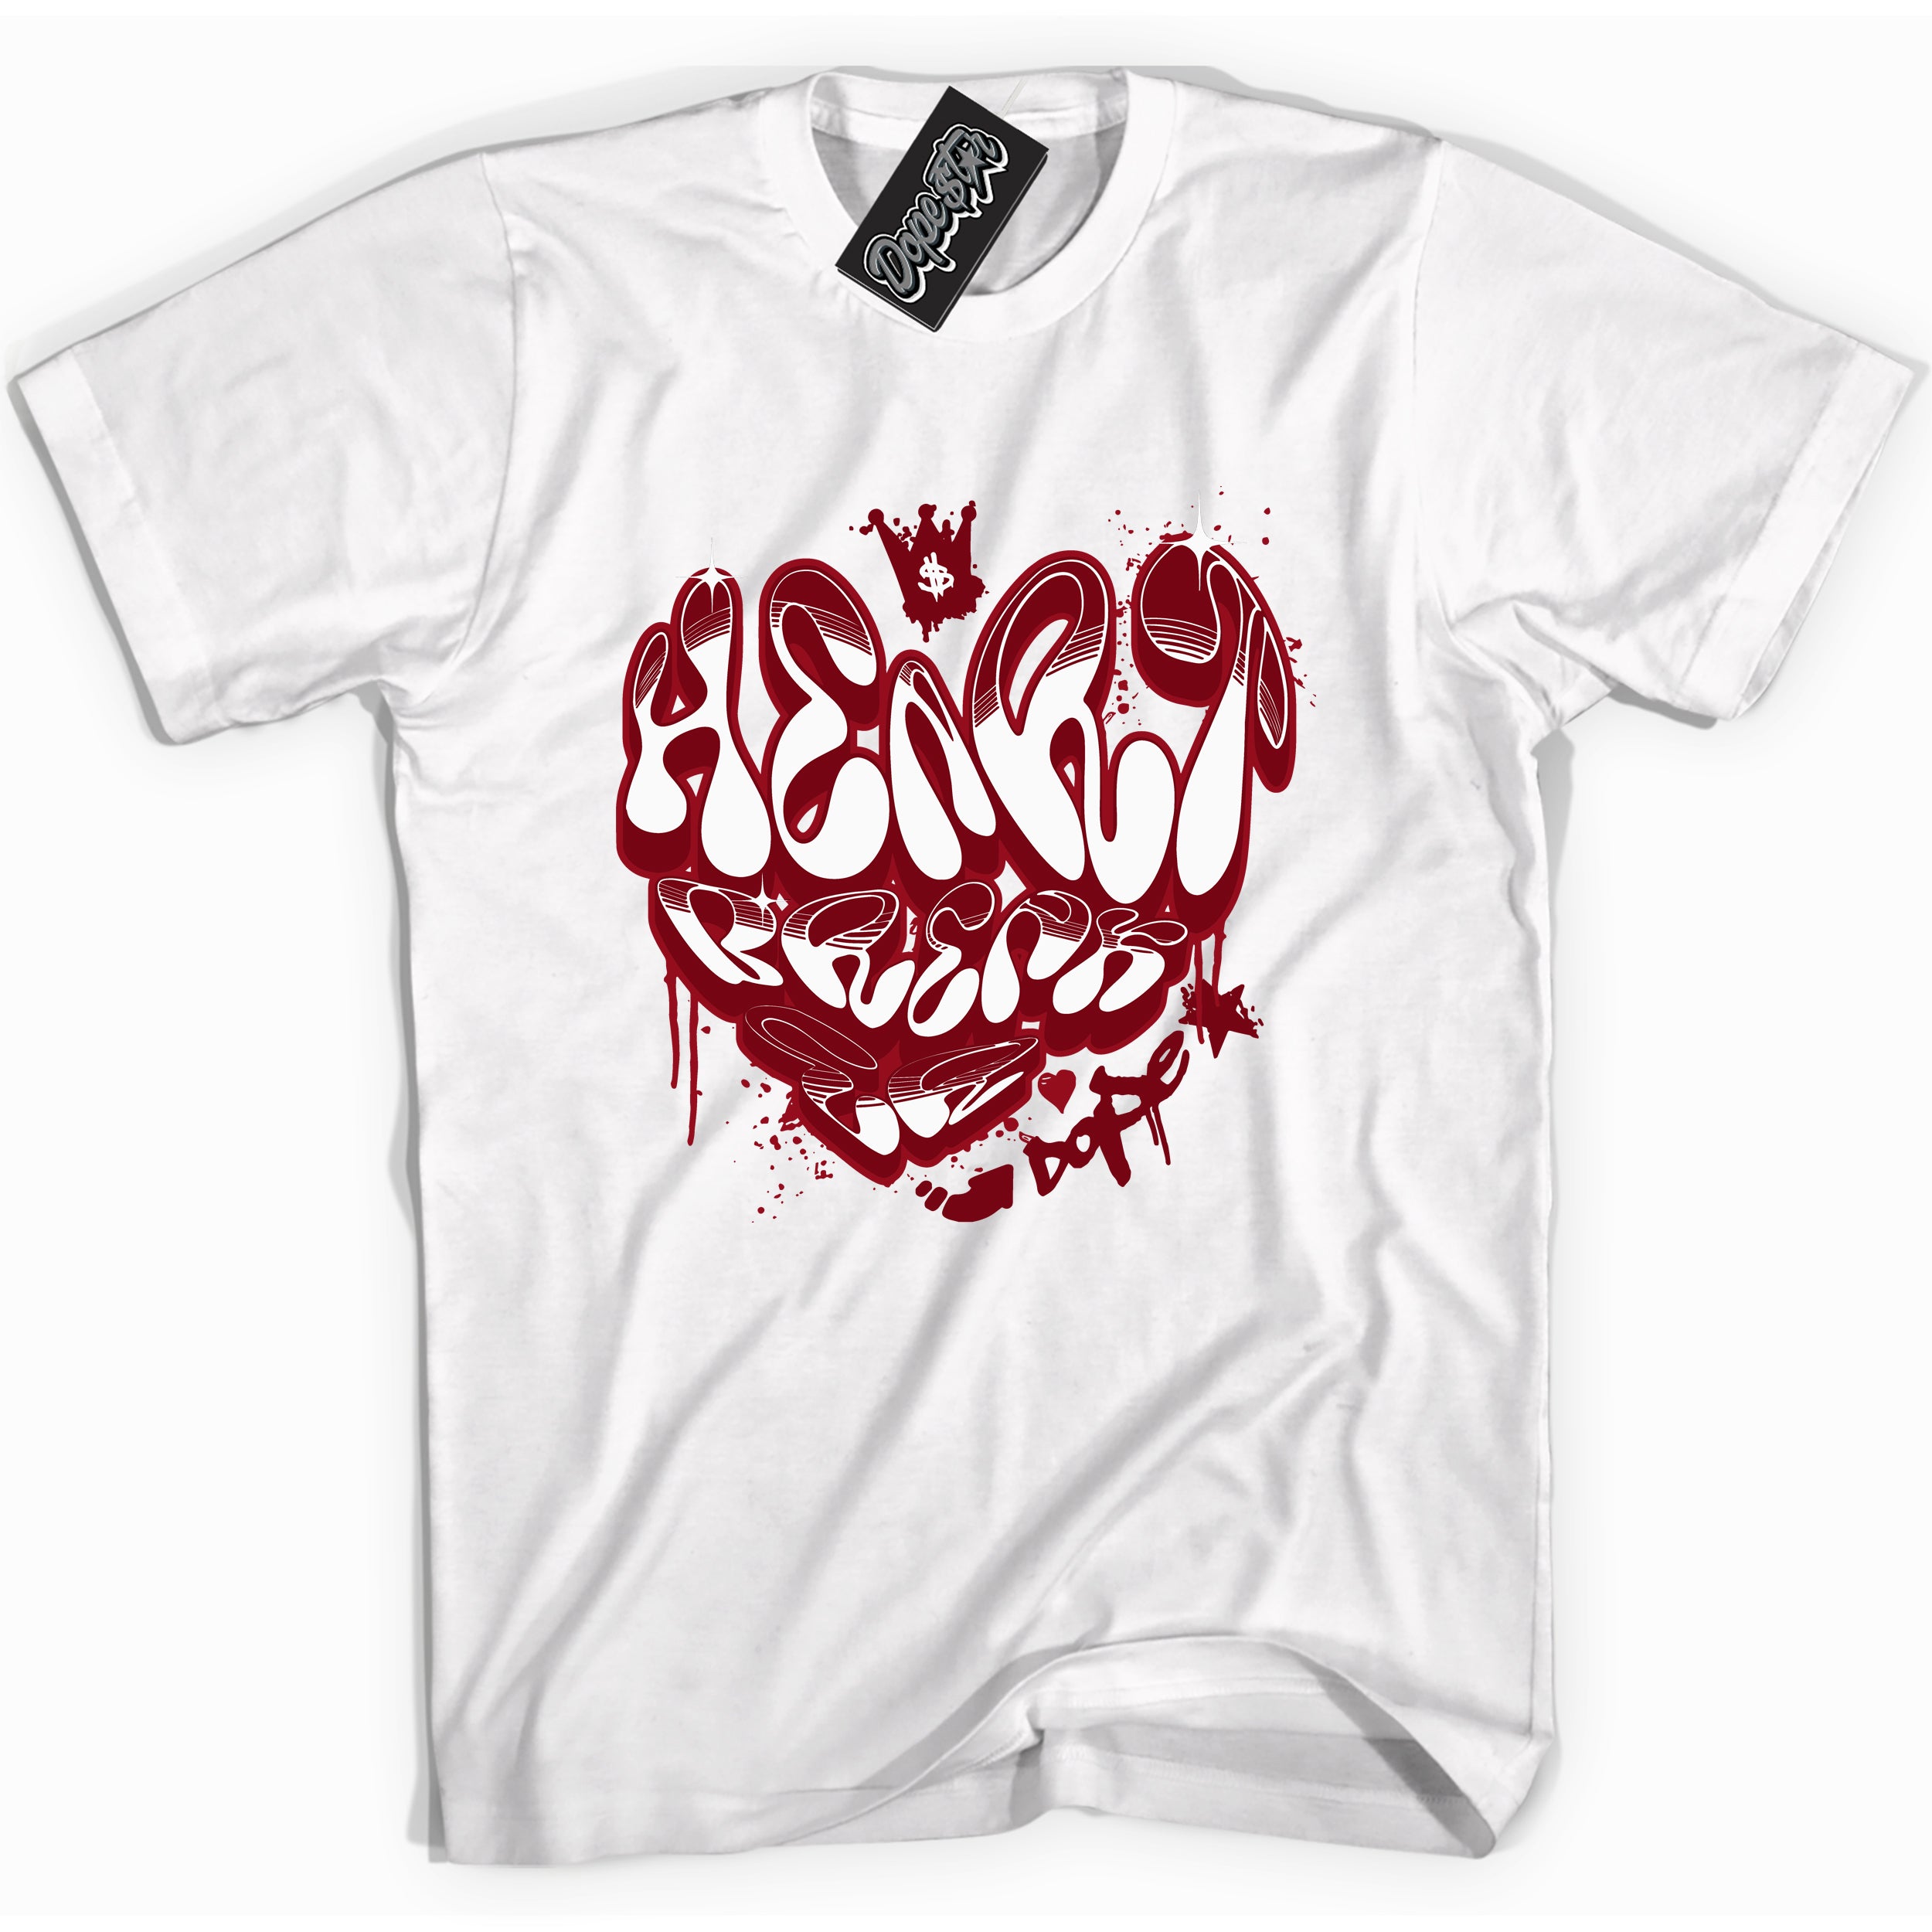 OG Metallic Burgundy 1s DopeStar Shirt Heartbreaker Graffiti Graphic